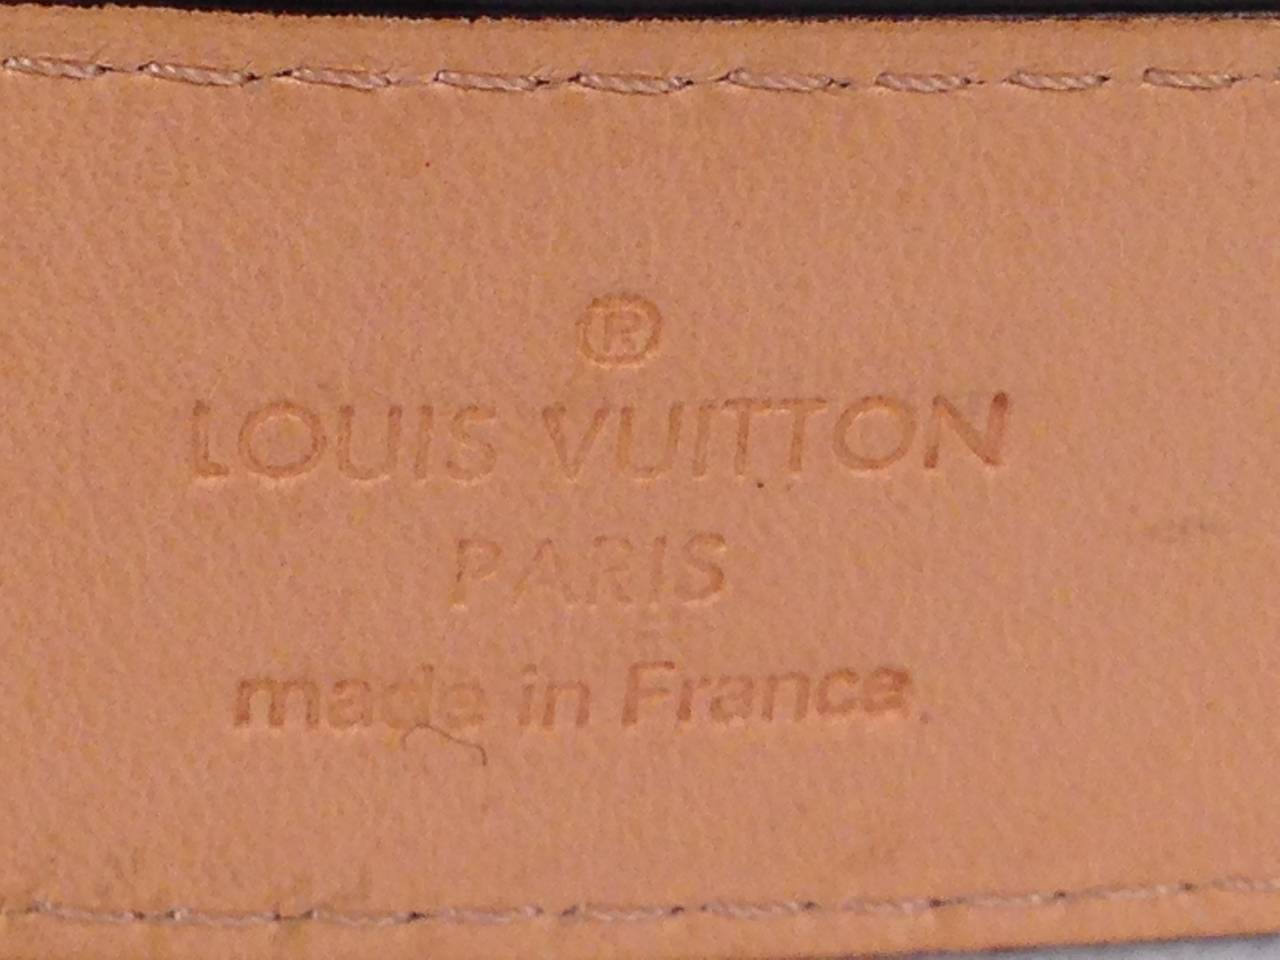 Louis Vuitton Amarante Vernis Monogram Belt